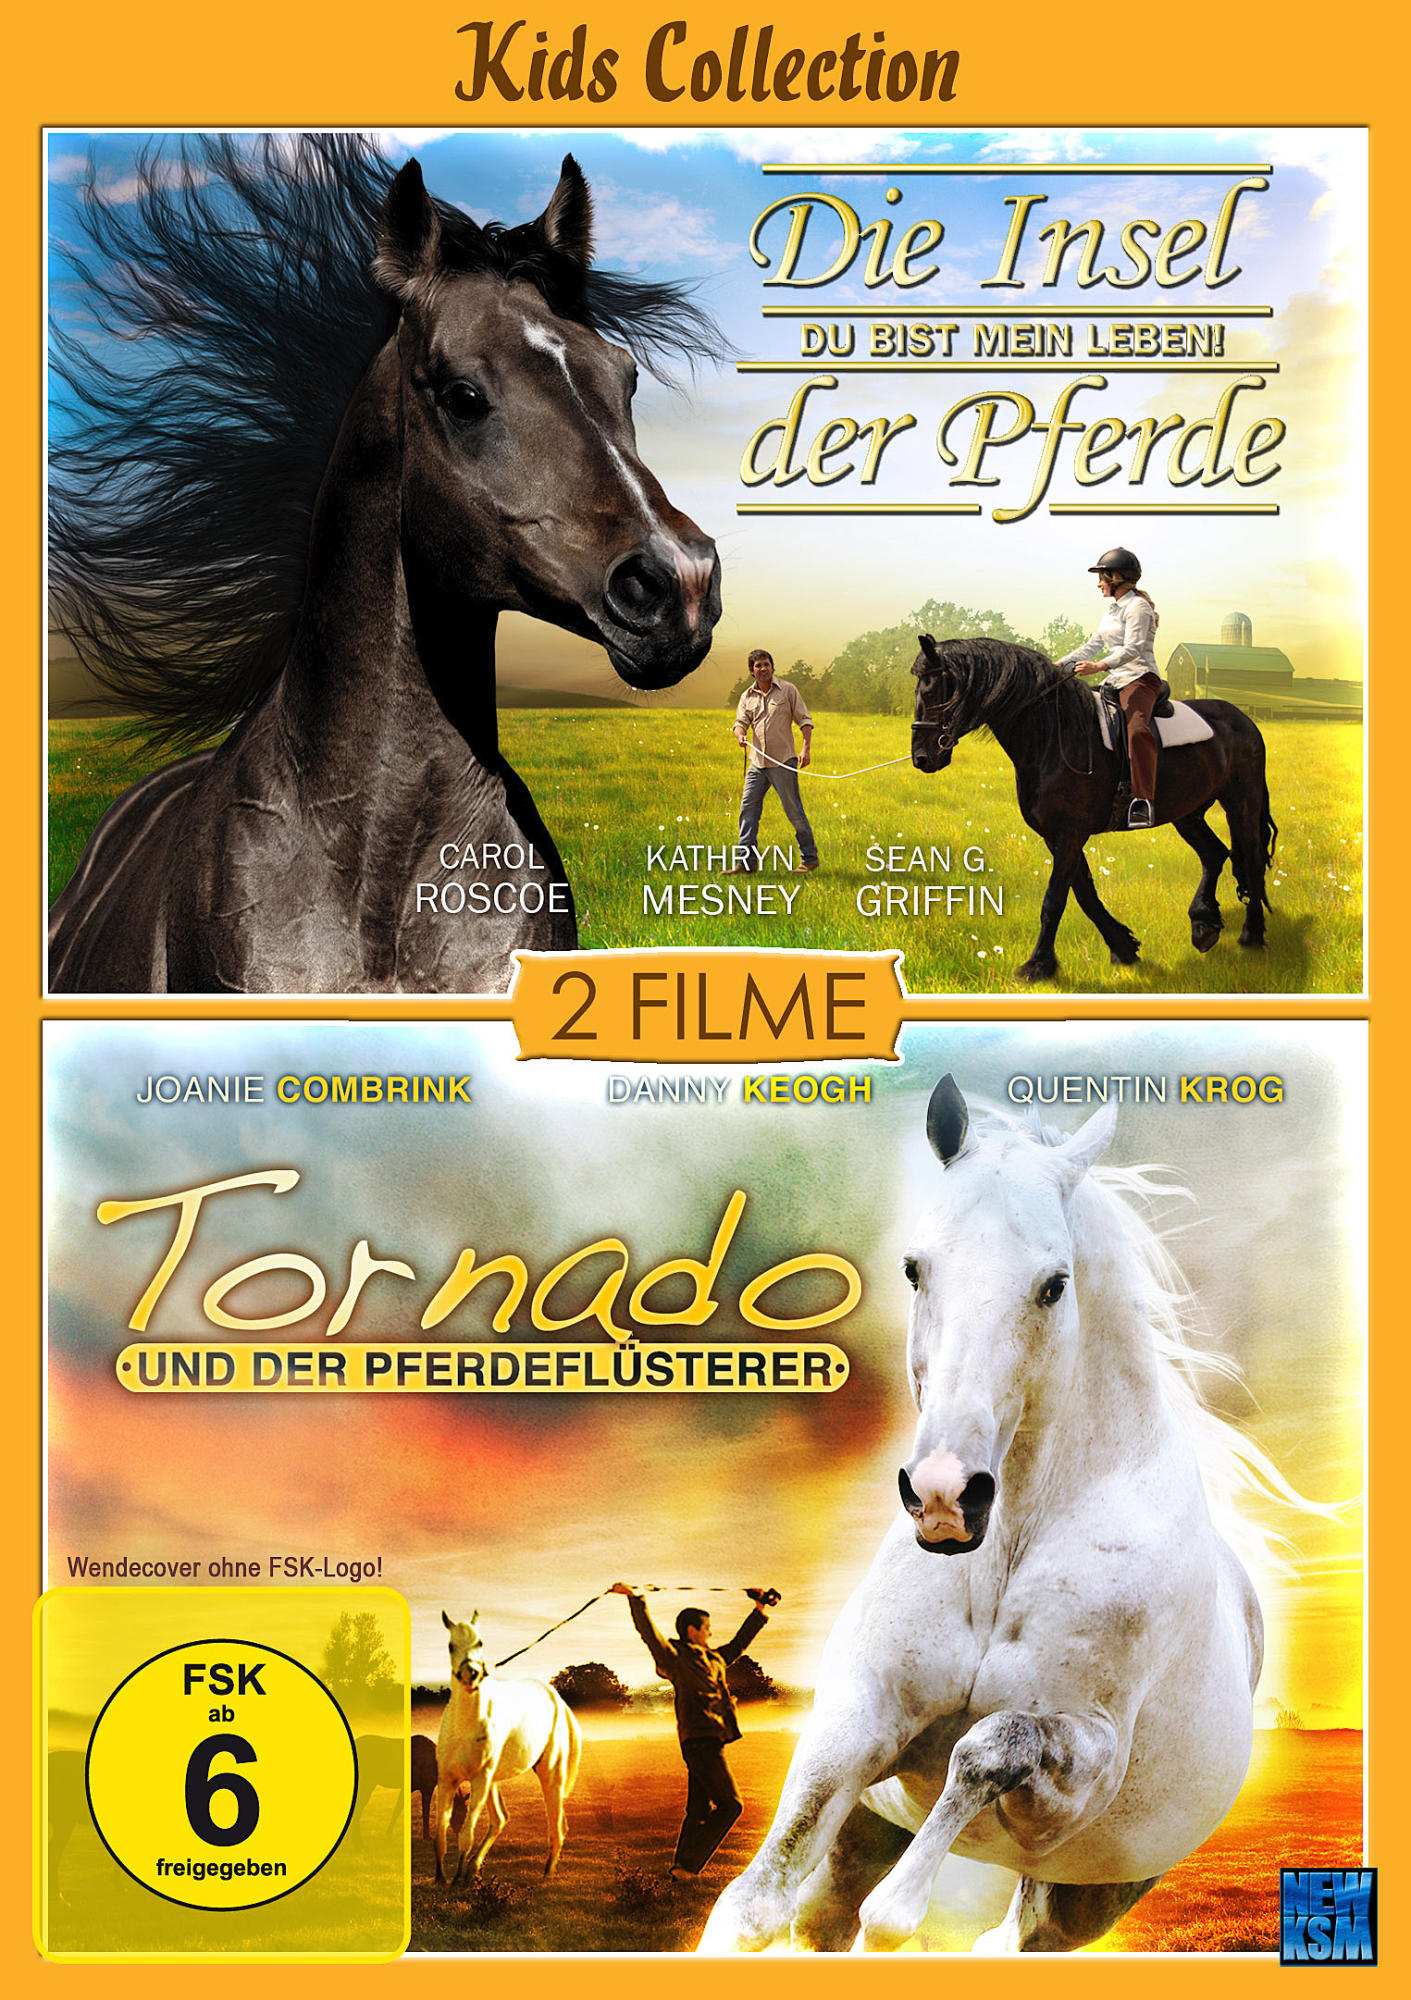 Kids Collection: Die Insel der und DVD der Tornado Pferdeflüsterer Pferde 